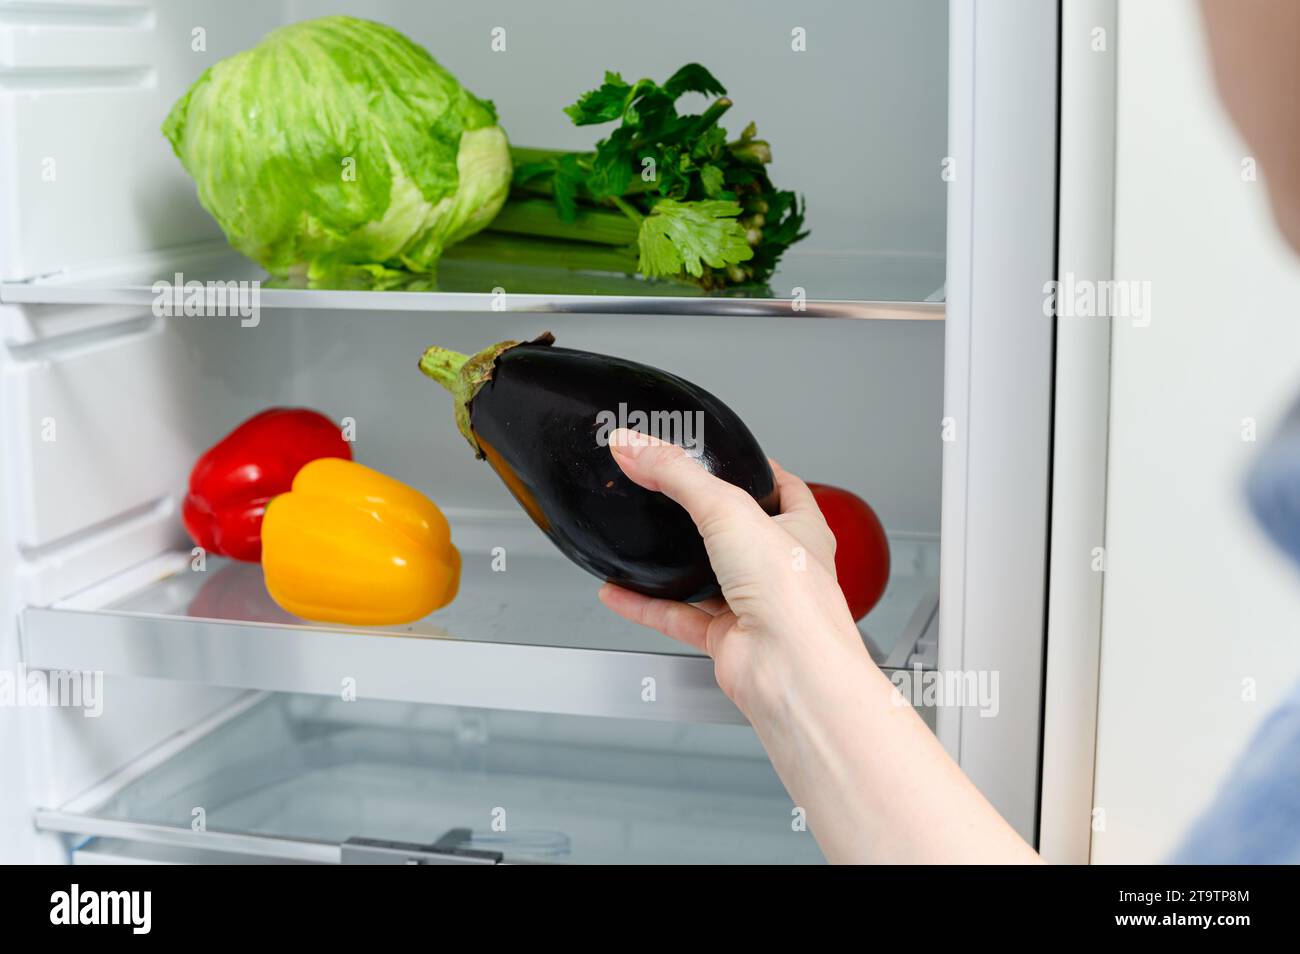 Una donna mette una melanzana in frigorifero. Verdure fresche stese sullo scaffale nel frigo. Foto Stock